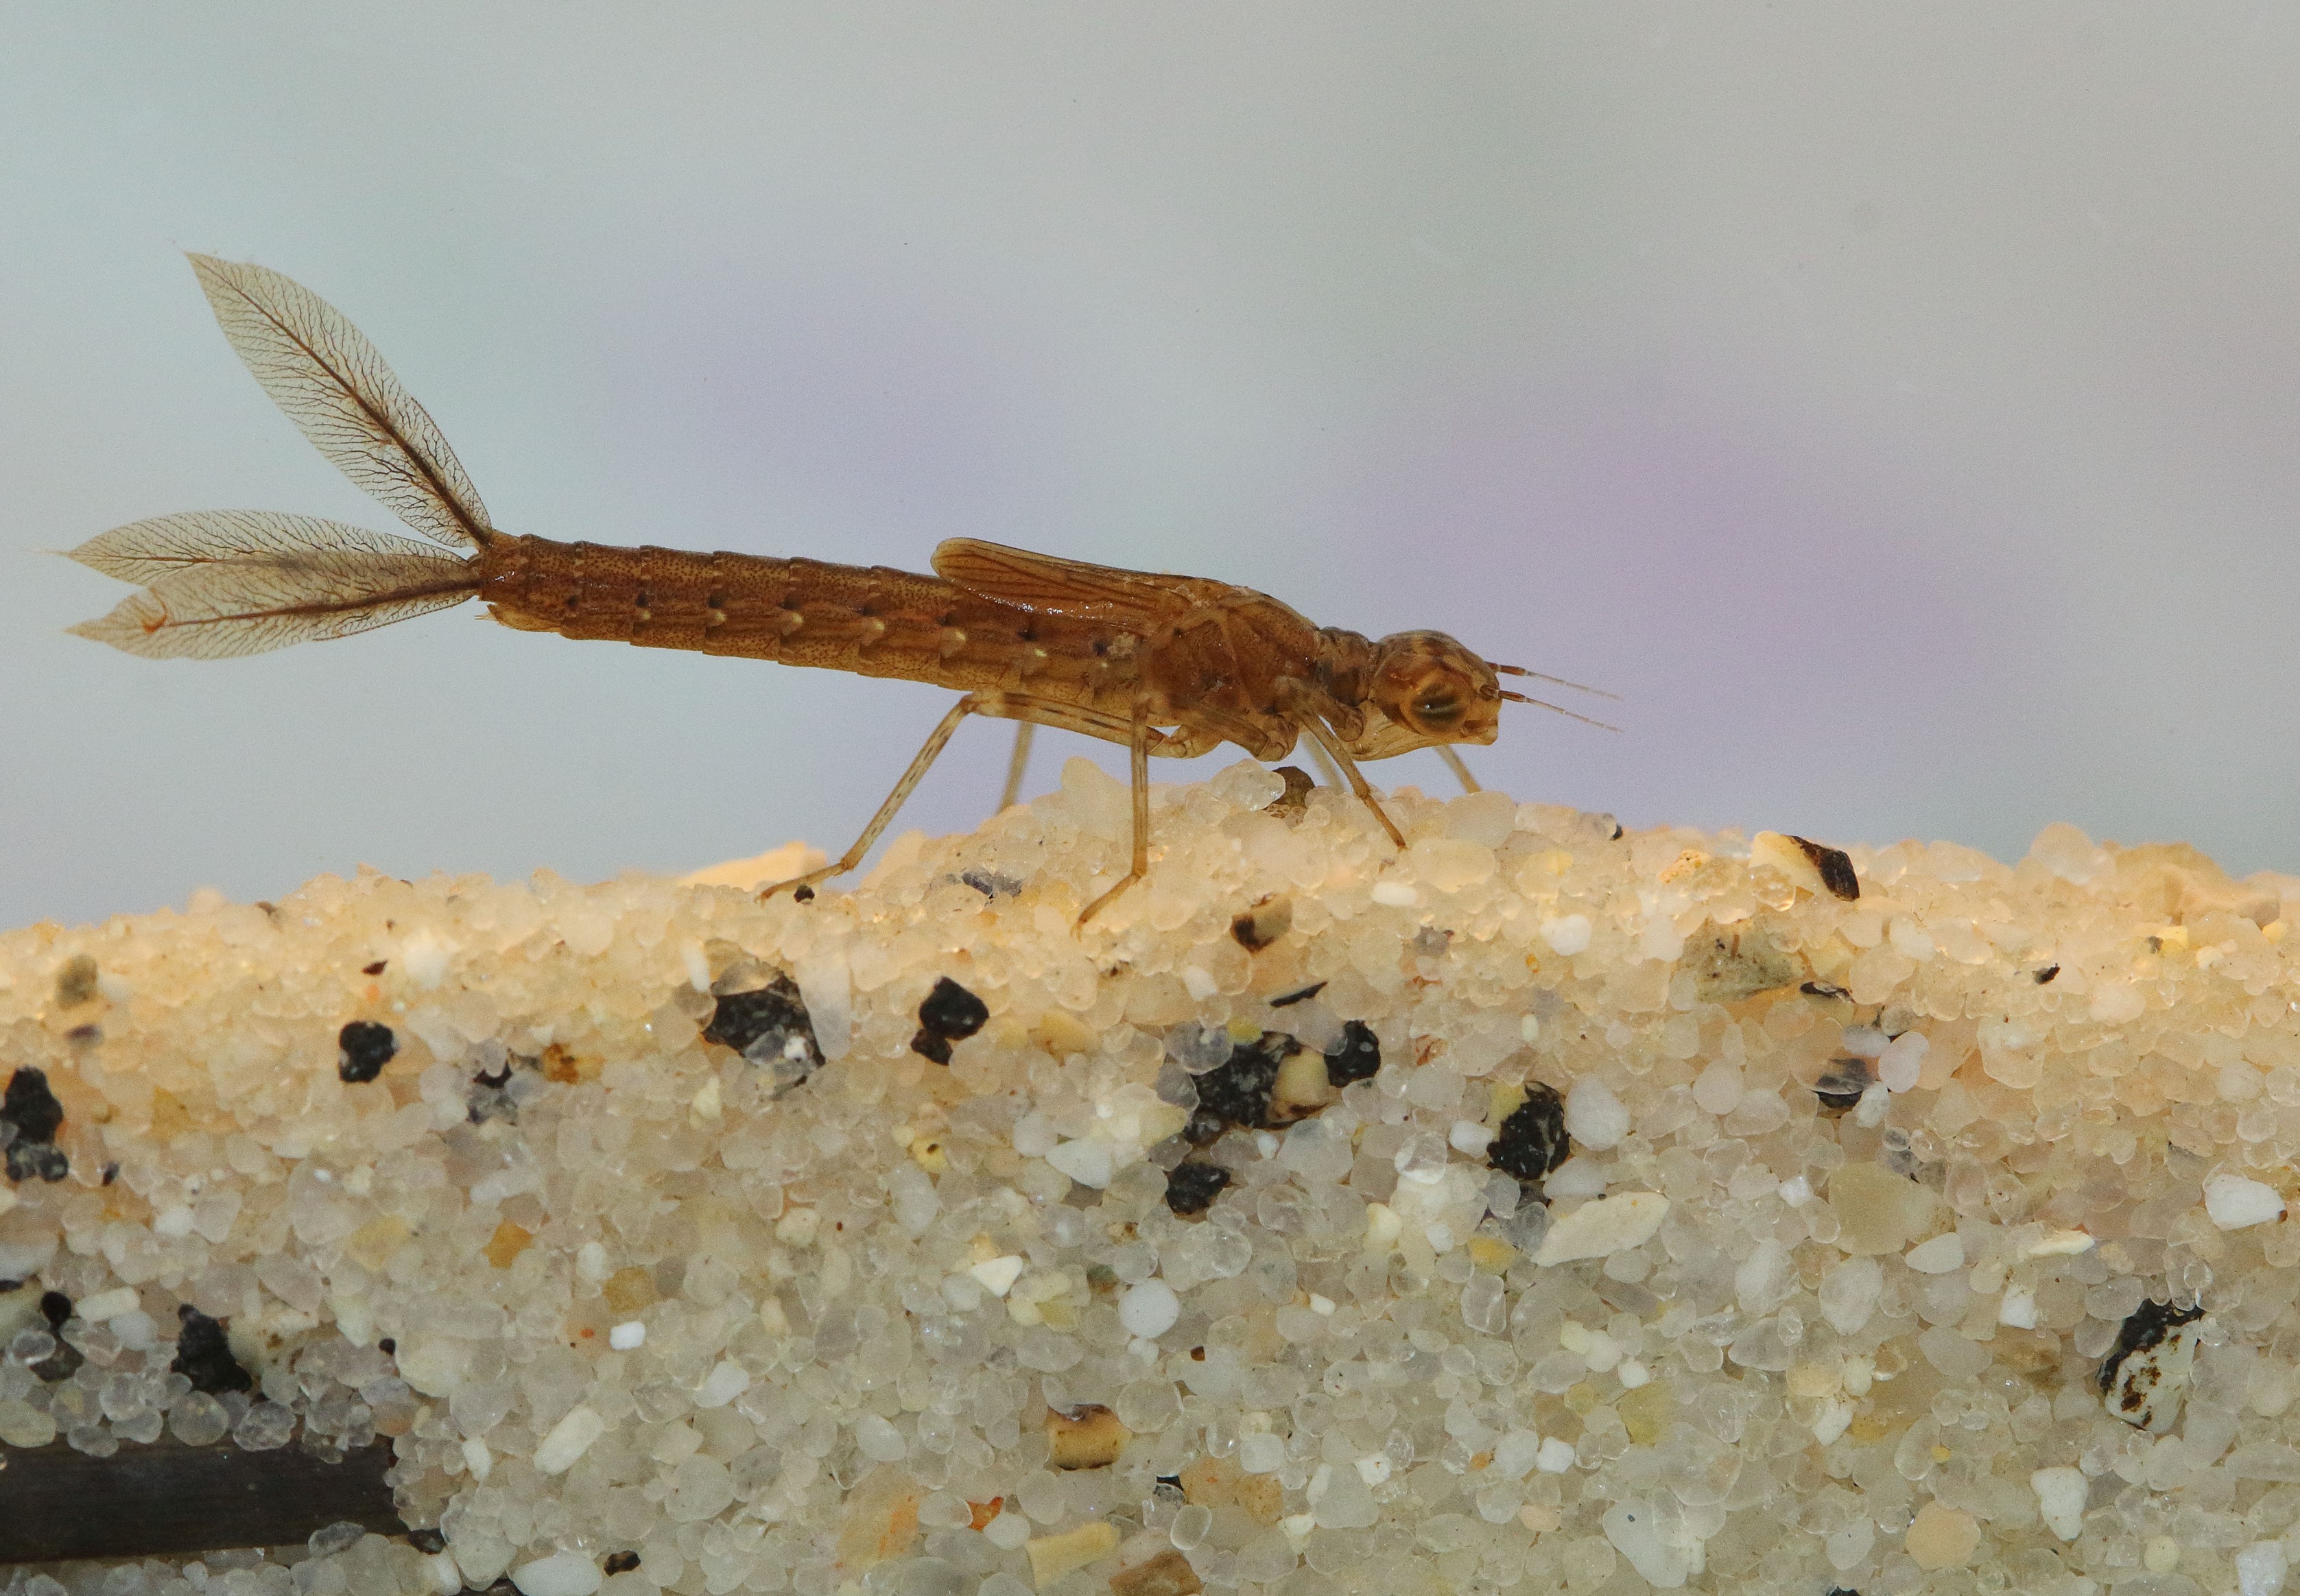 ©Albano Soares  Fotografia nº3: Larva de libelinha dentro de água doce, da espécie Ischnura graellsii